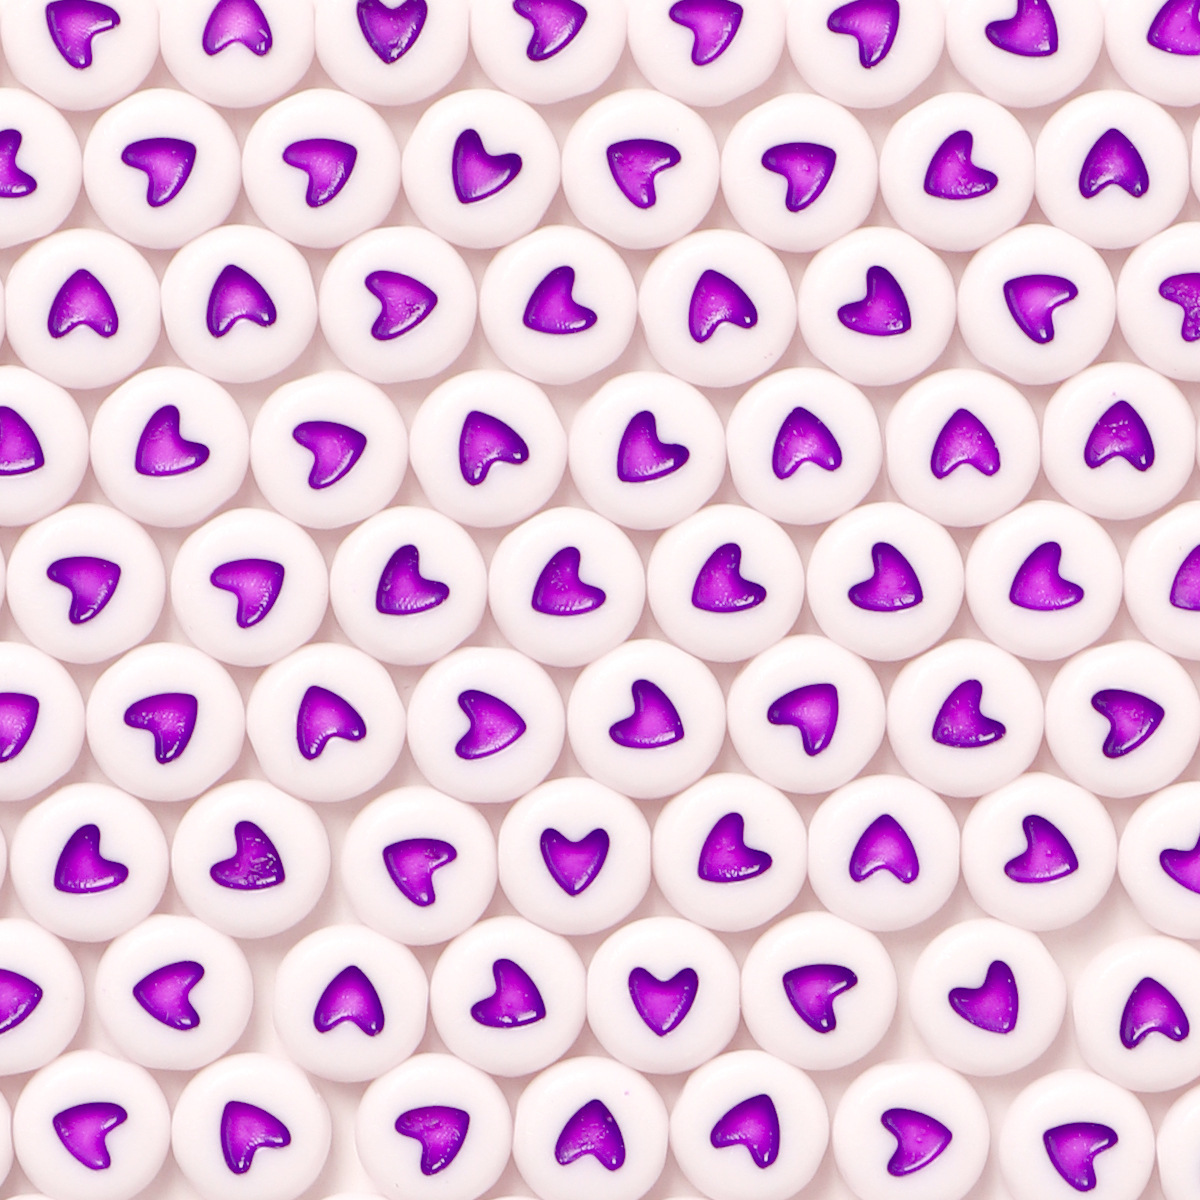 11:violetti